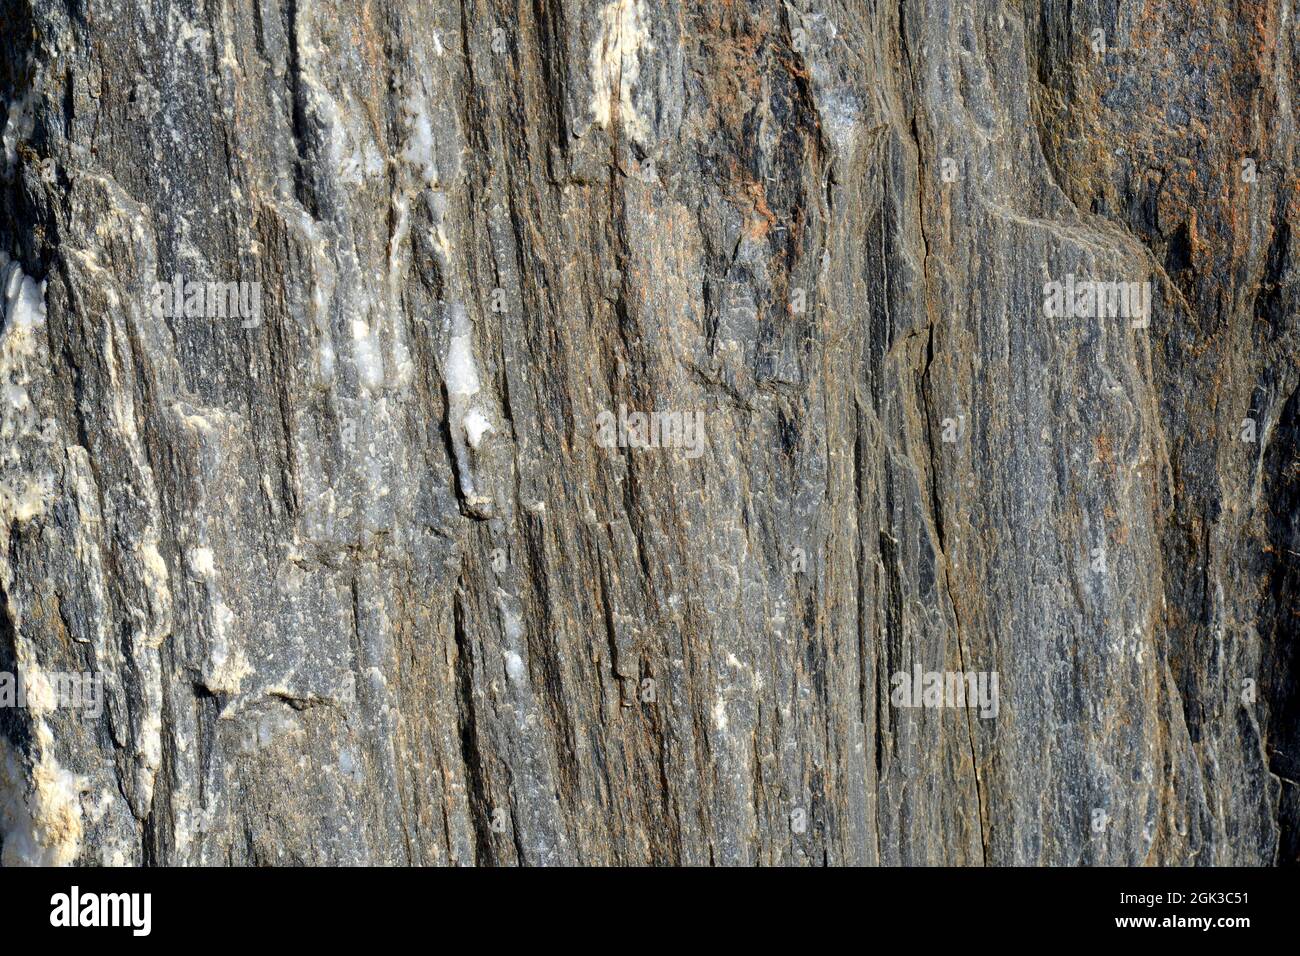 Basalt, close-up. Stock Photo